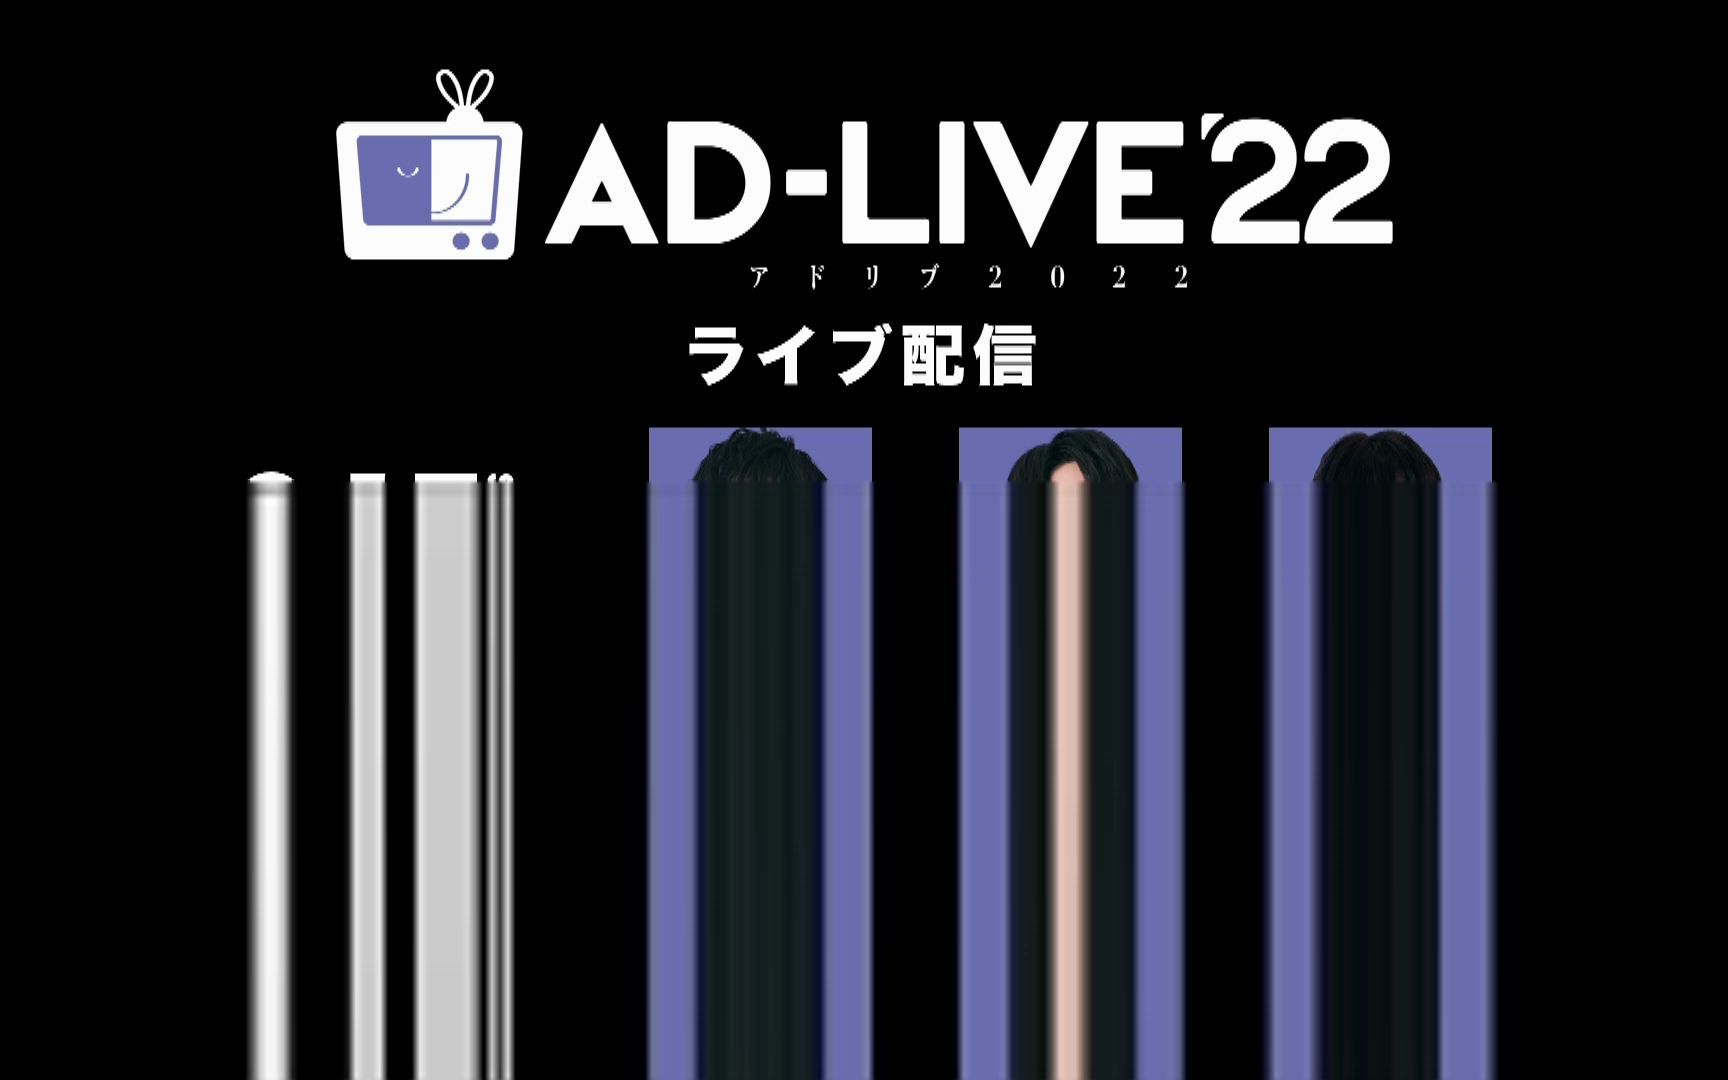 AD-LIVE 2022 9.17夜公演